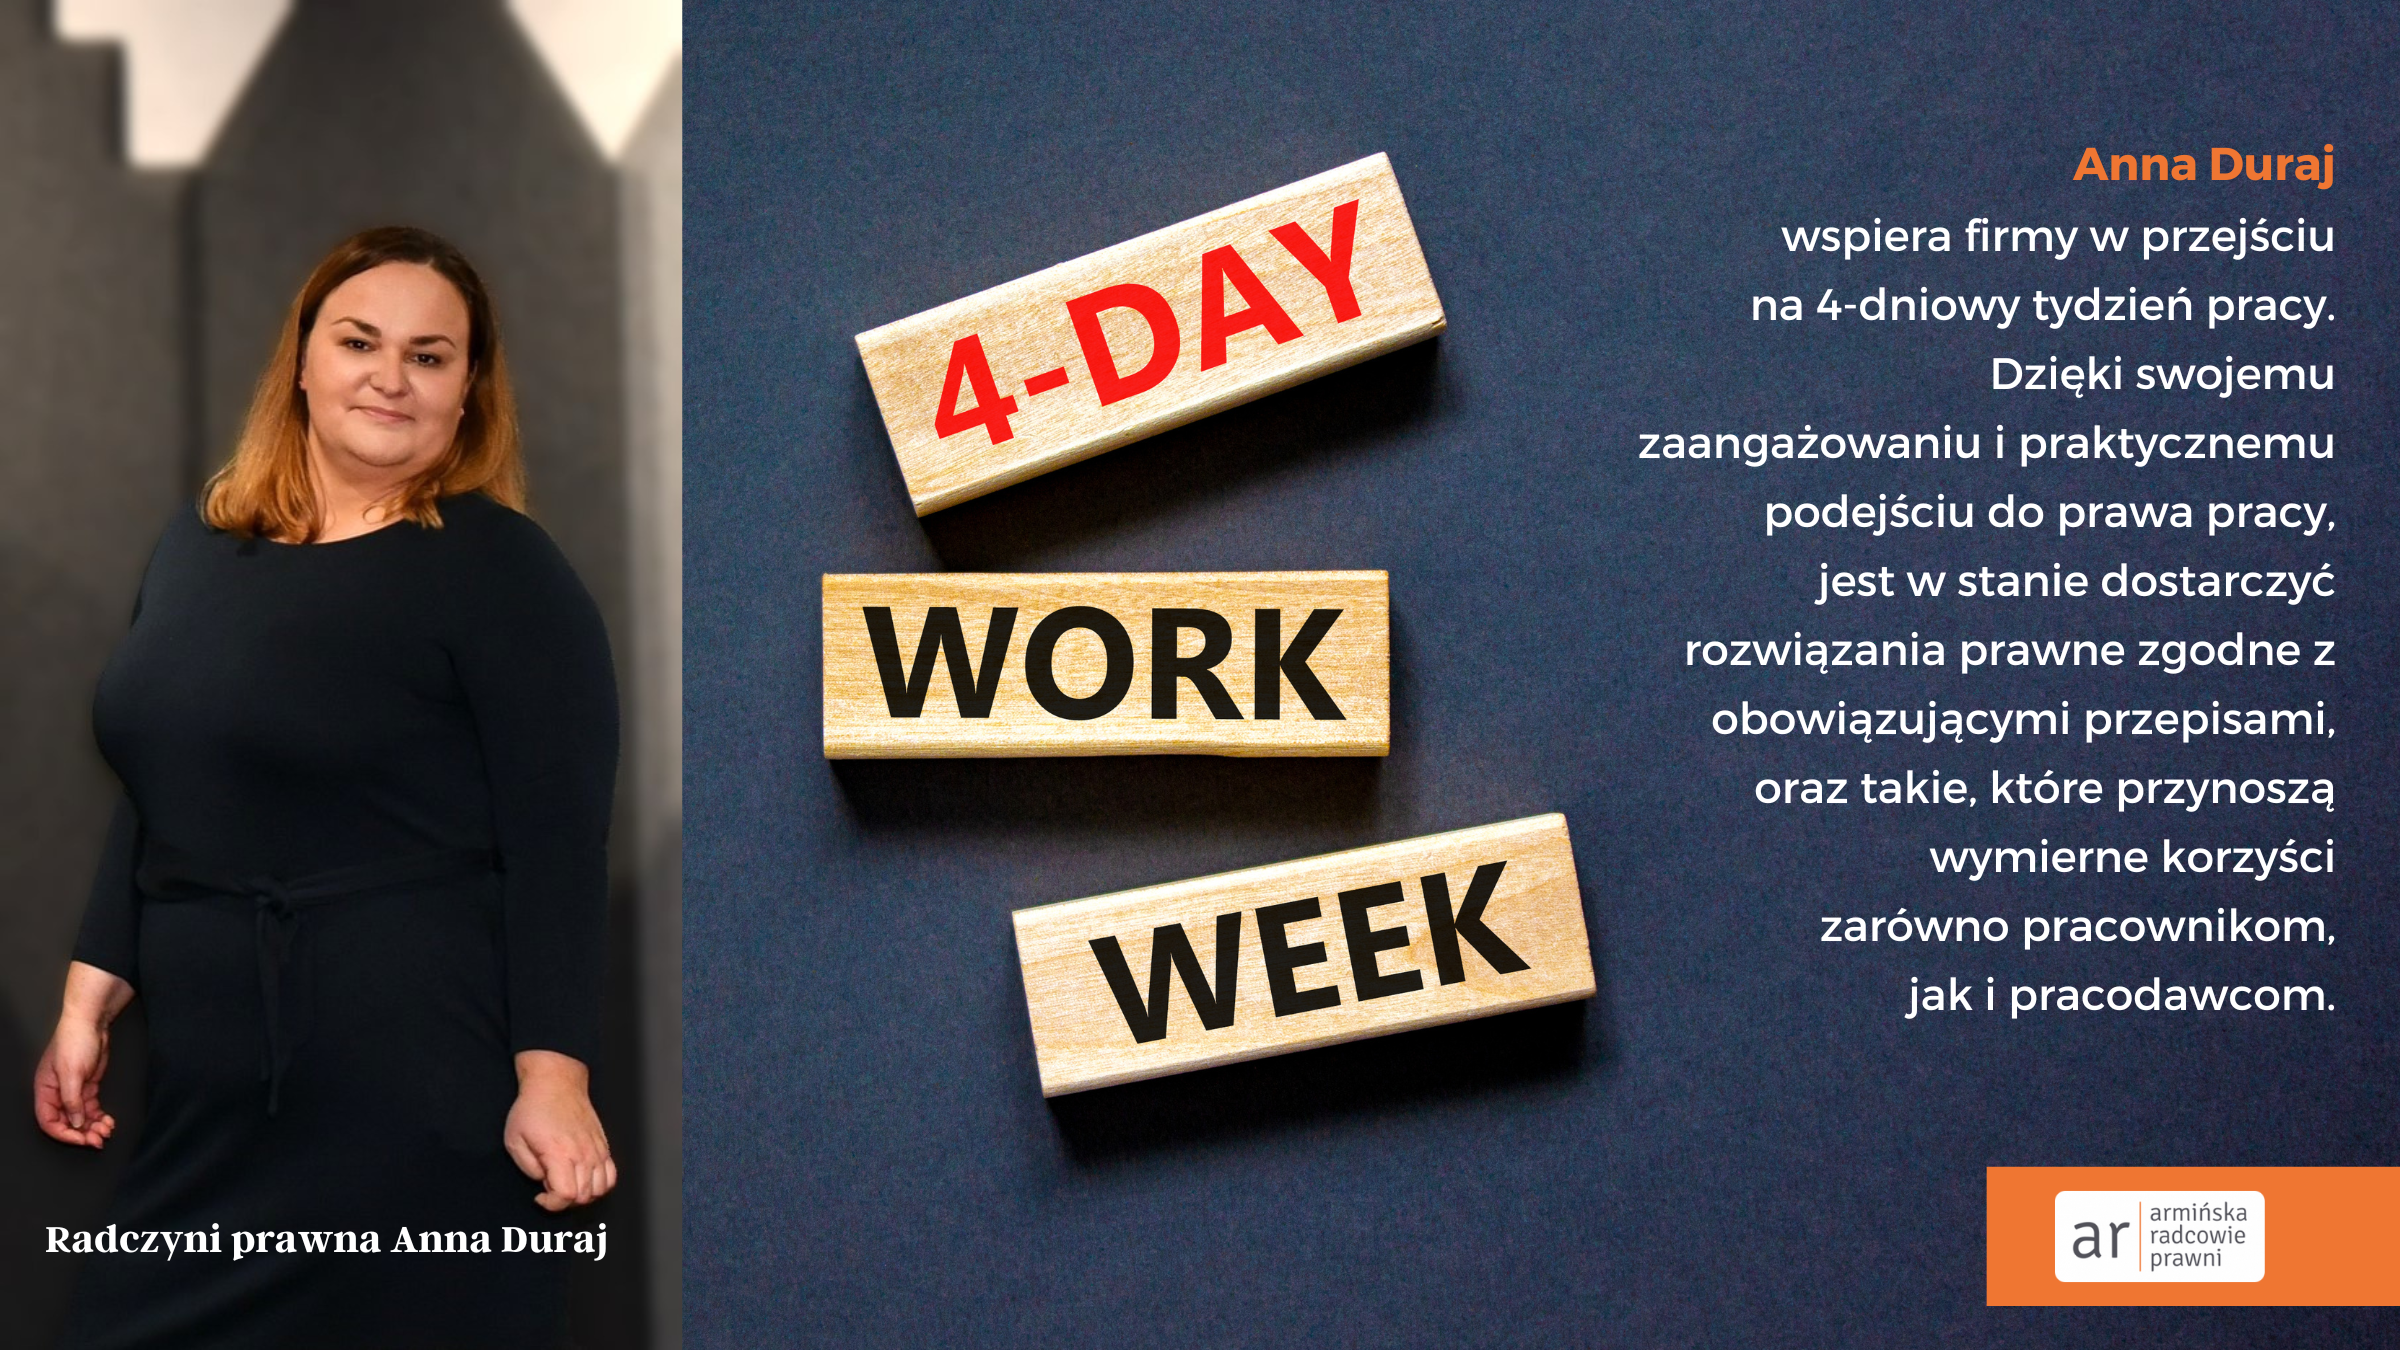 Anna Duraj radca prawny 4 dniowy tydzień pracy usługa prawna